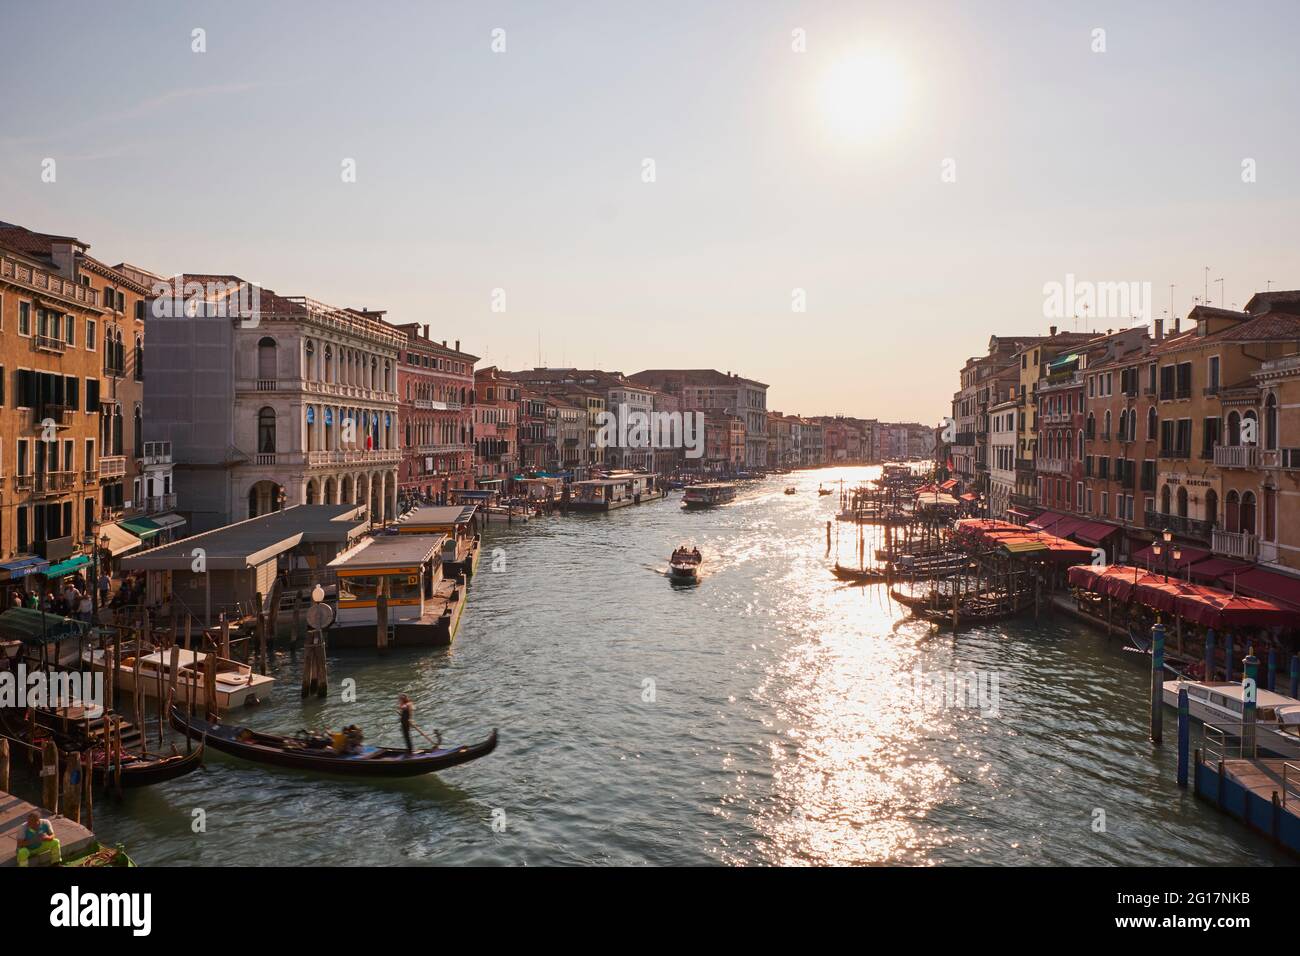 Le grand canal depuis le pont du Rialto, Venise, Italie, 2017 Banque D'Images